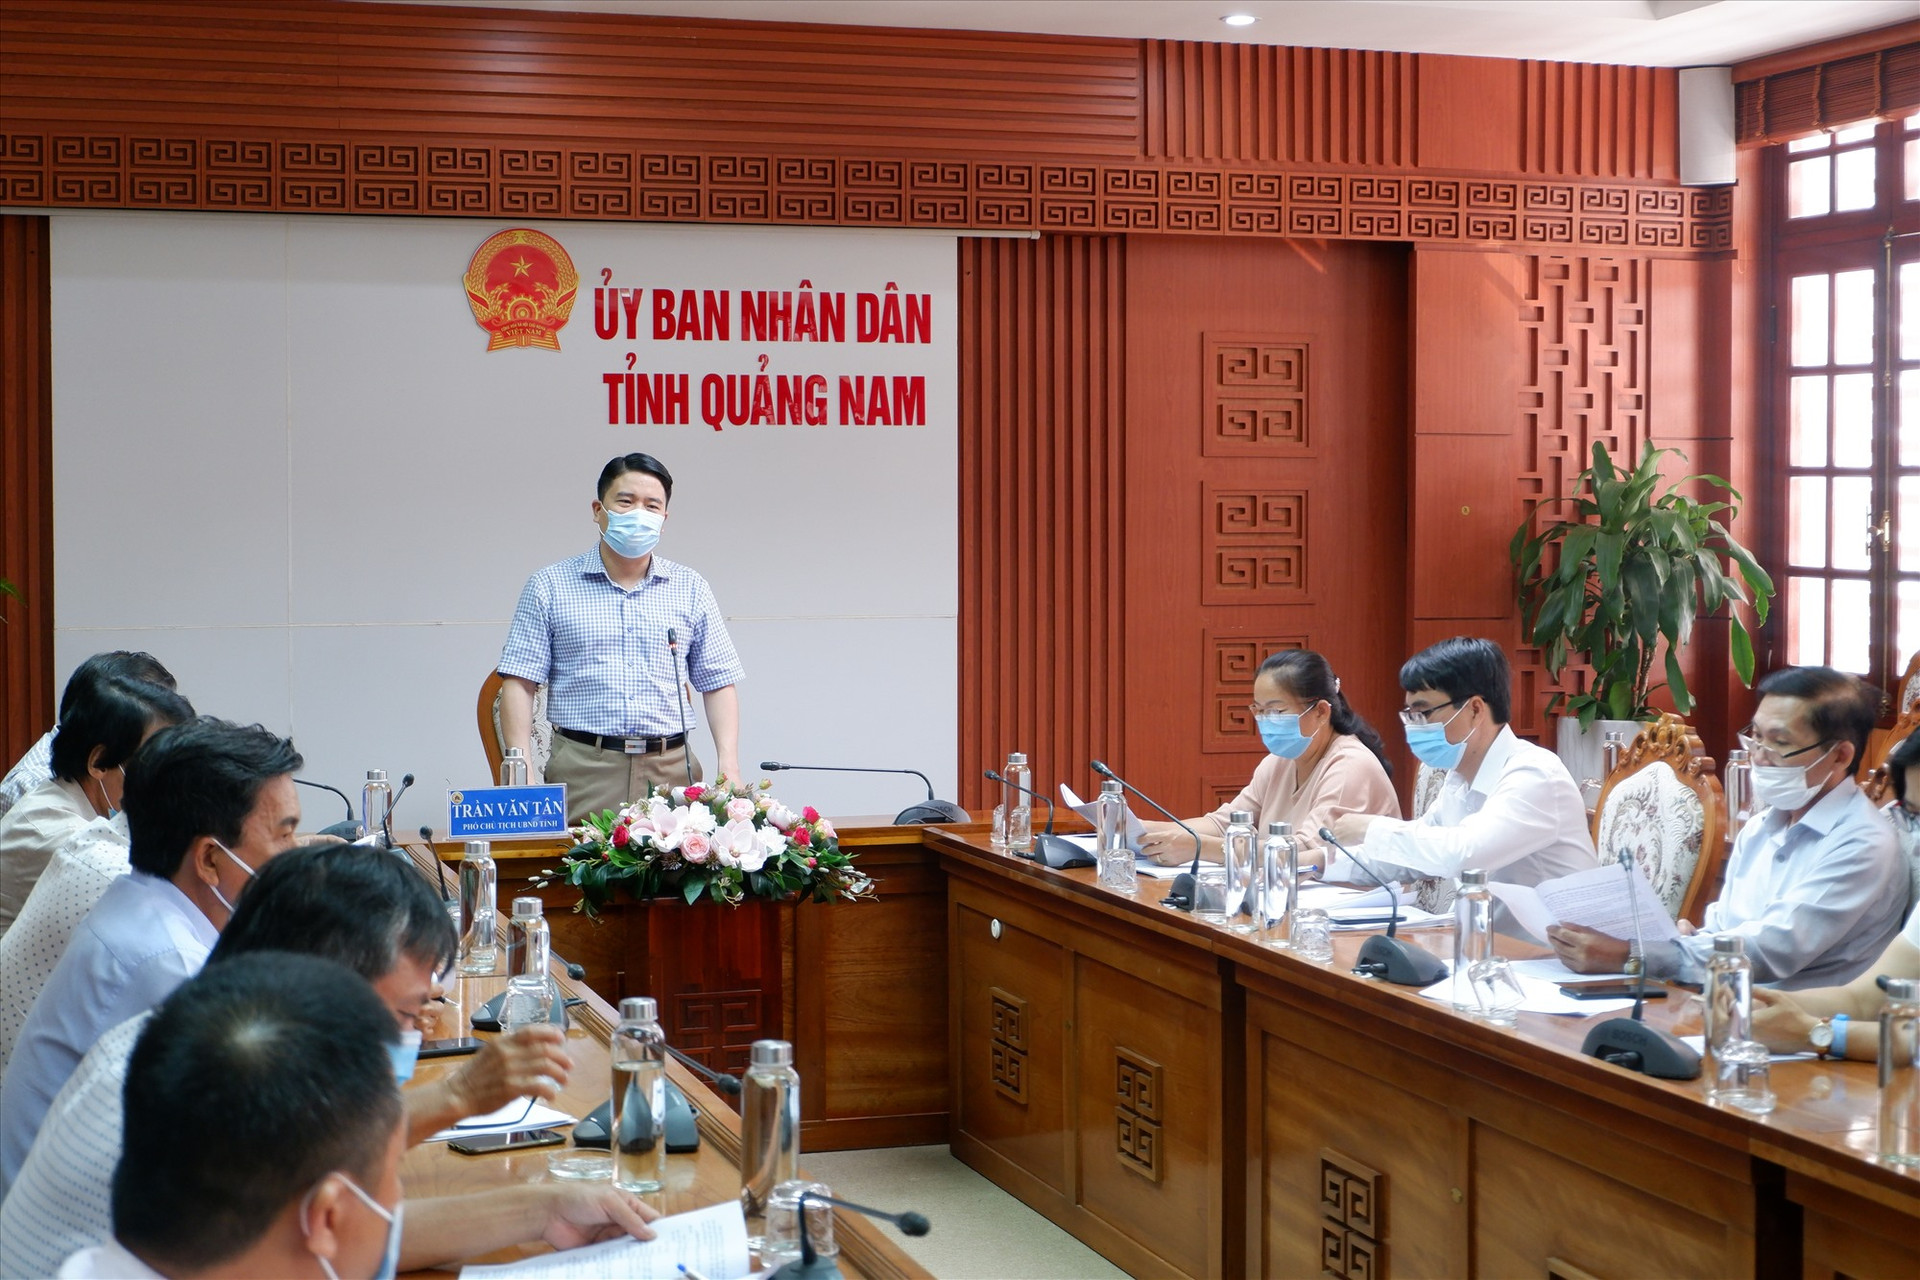 Phó Chủ tịch UBND tỉnh Trần Văn Tân chỉ đạo tại buổi làm việc sáng 22.6. Ảnh: X.H